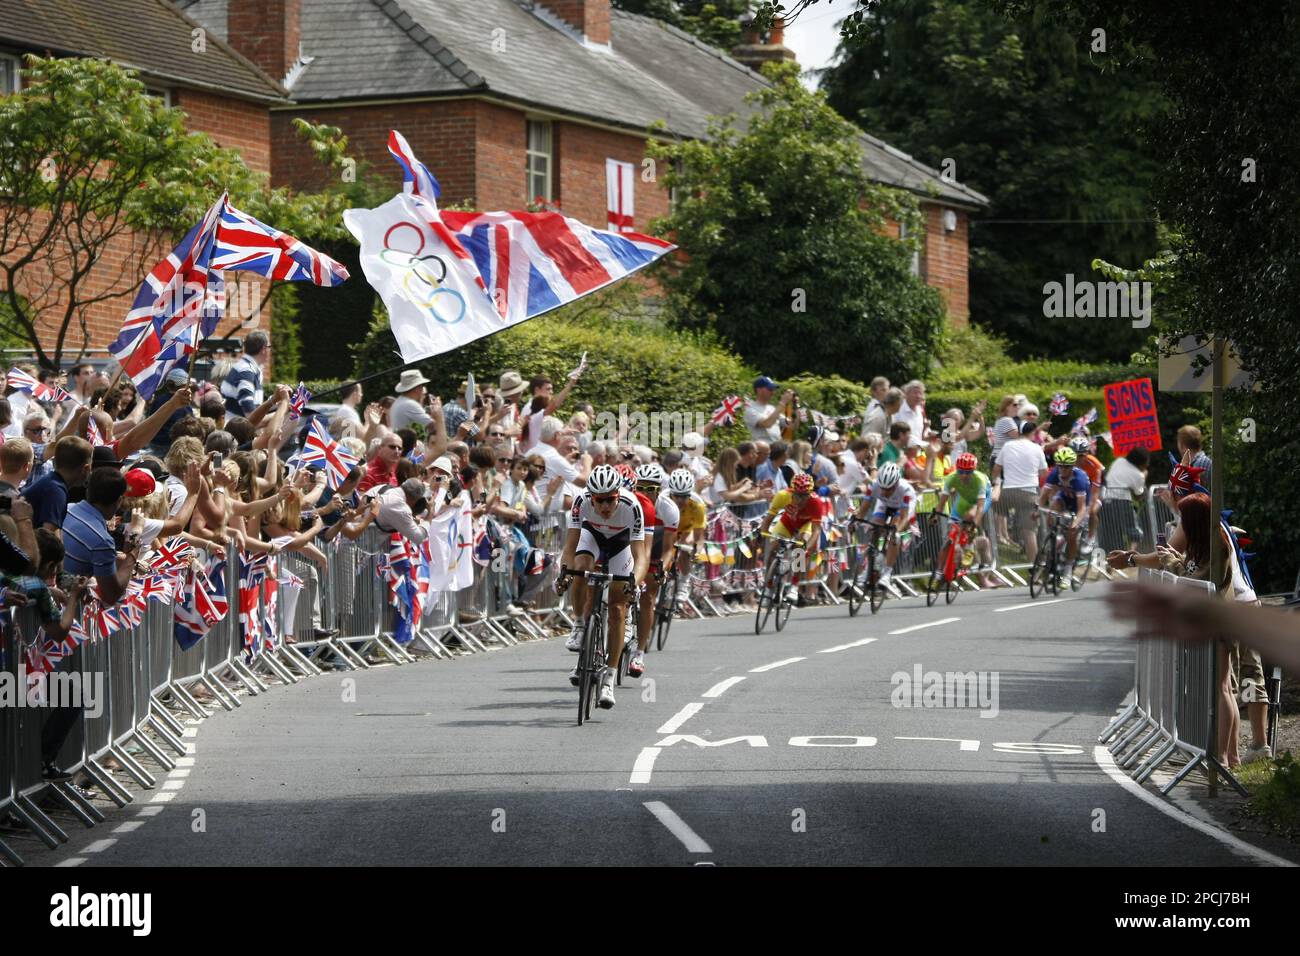 Agosto 2012 Headley, Surrey, Regno Unito la gara olimpica di biciclette peloton passa attraverso una folla ferventemente patriottica nel villaggio di Headley. Foto Stock